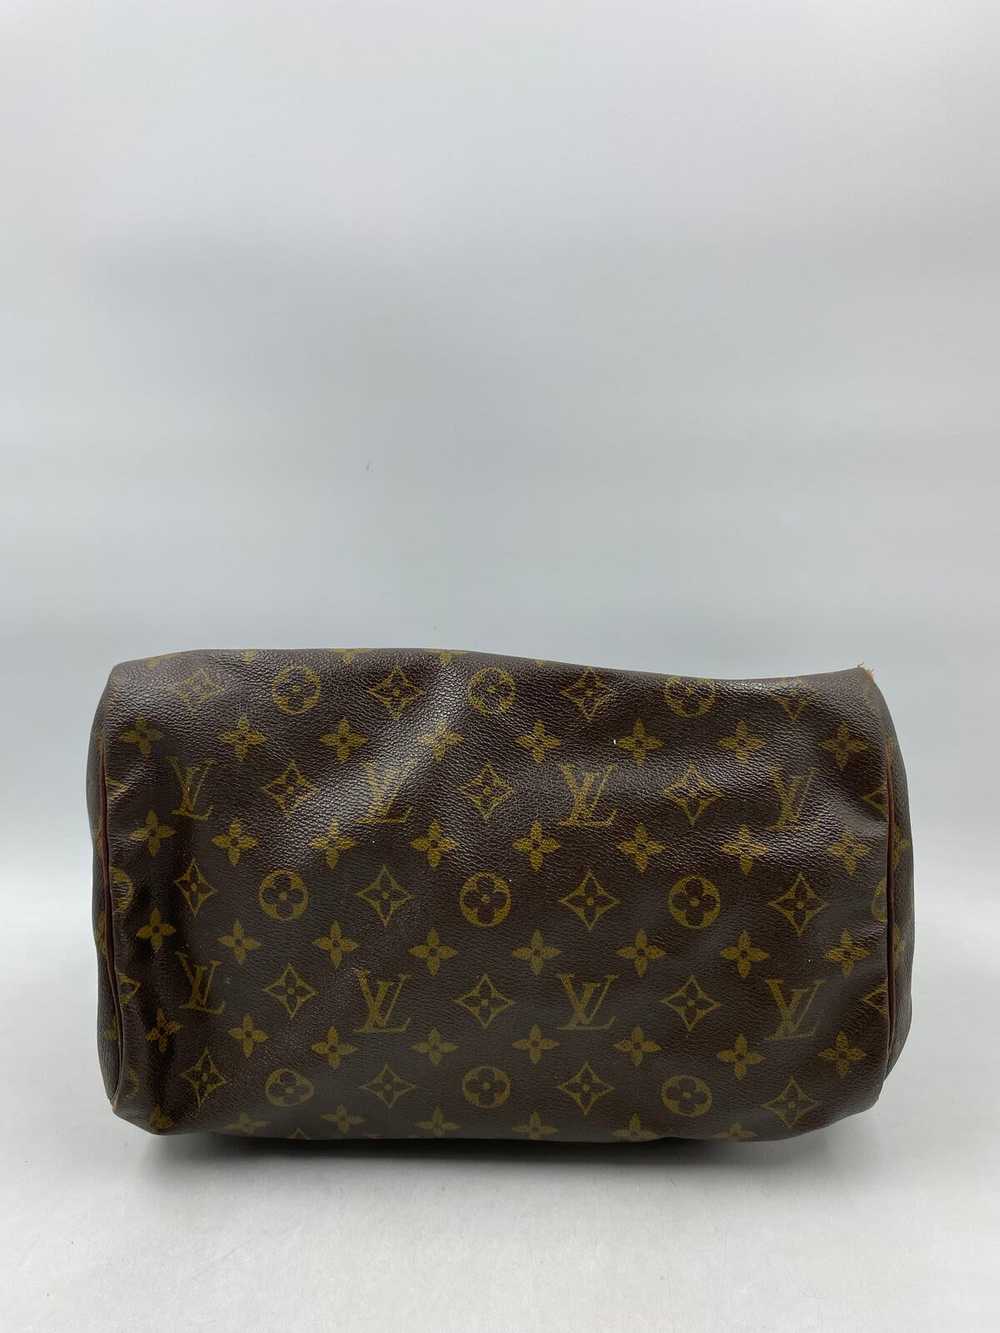 Authentic Louis Vuitton Brown Handbag - image 3